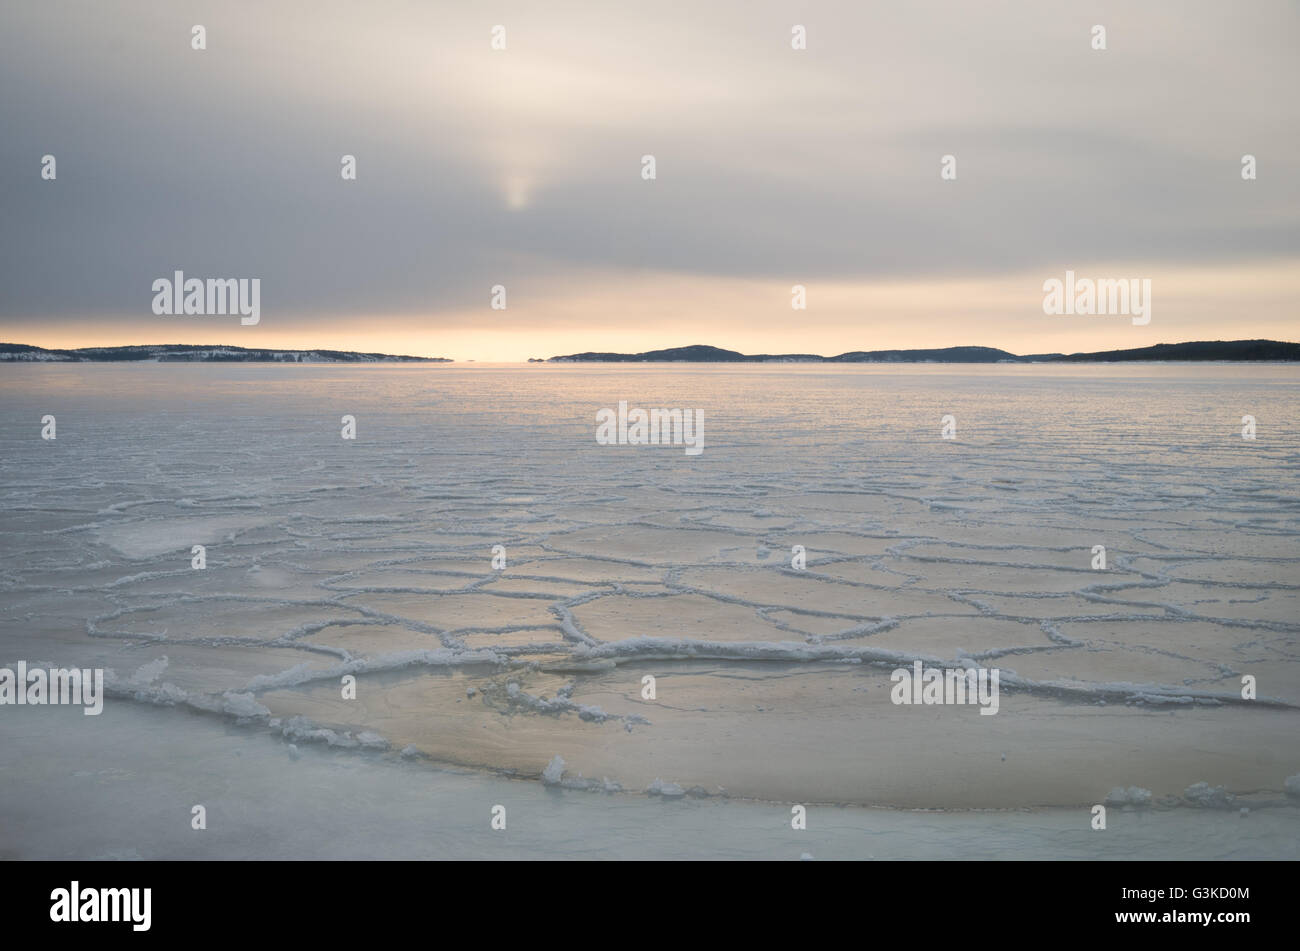 Soleil bas sur l'horizon sur la glace de mer dans l'archipel à l'extérieur de Örnsköldsvik dans la partie nord de la Suède Banque D'Images